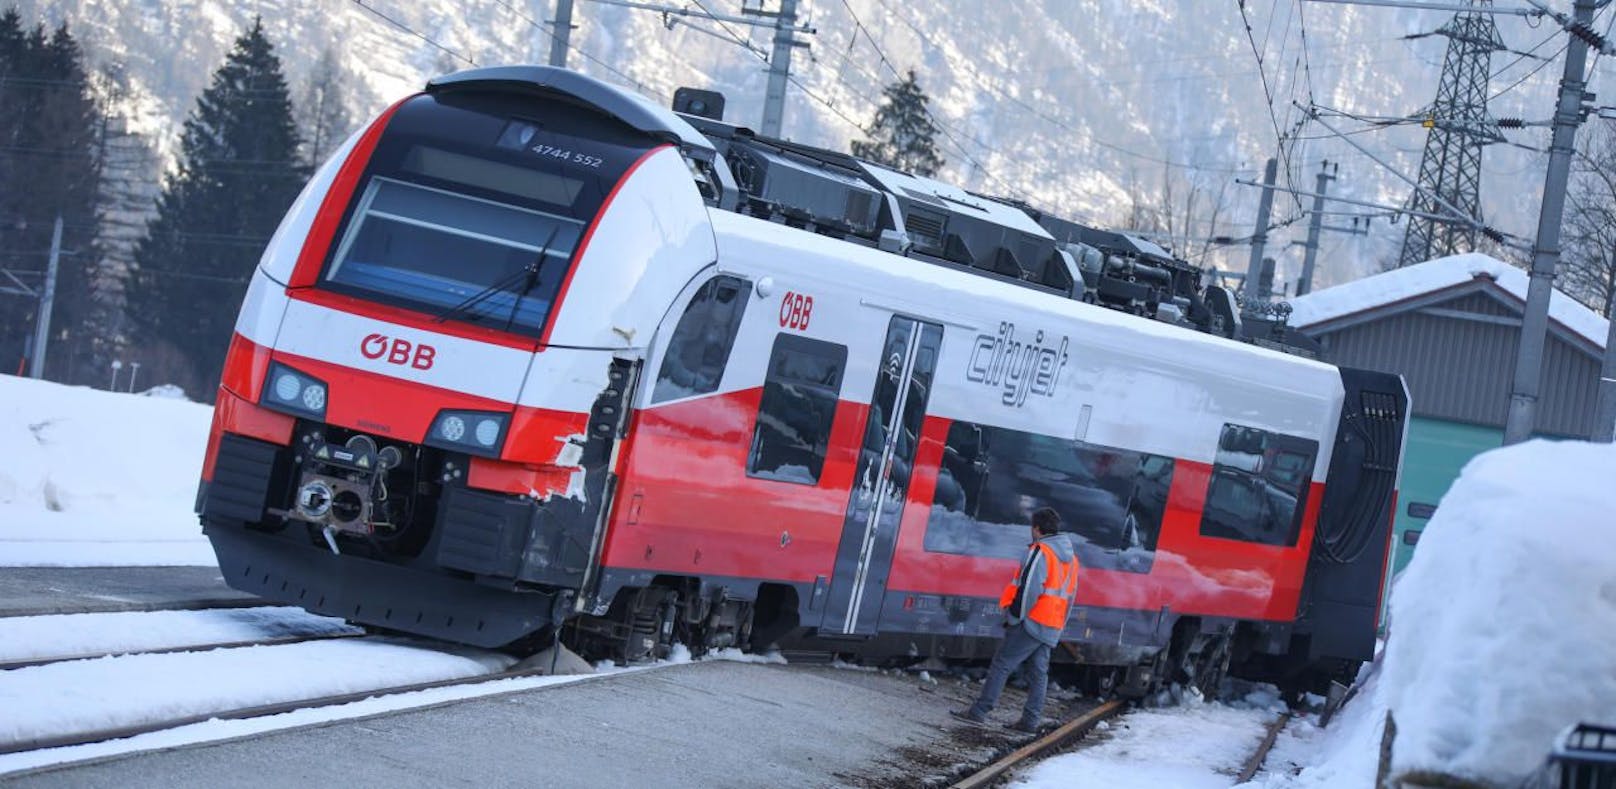 Zug entgleist, Passagiere verletzt – die ersten Fotos